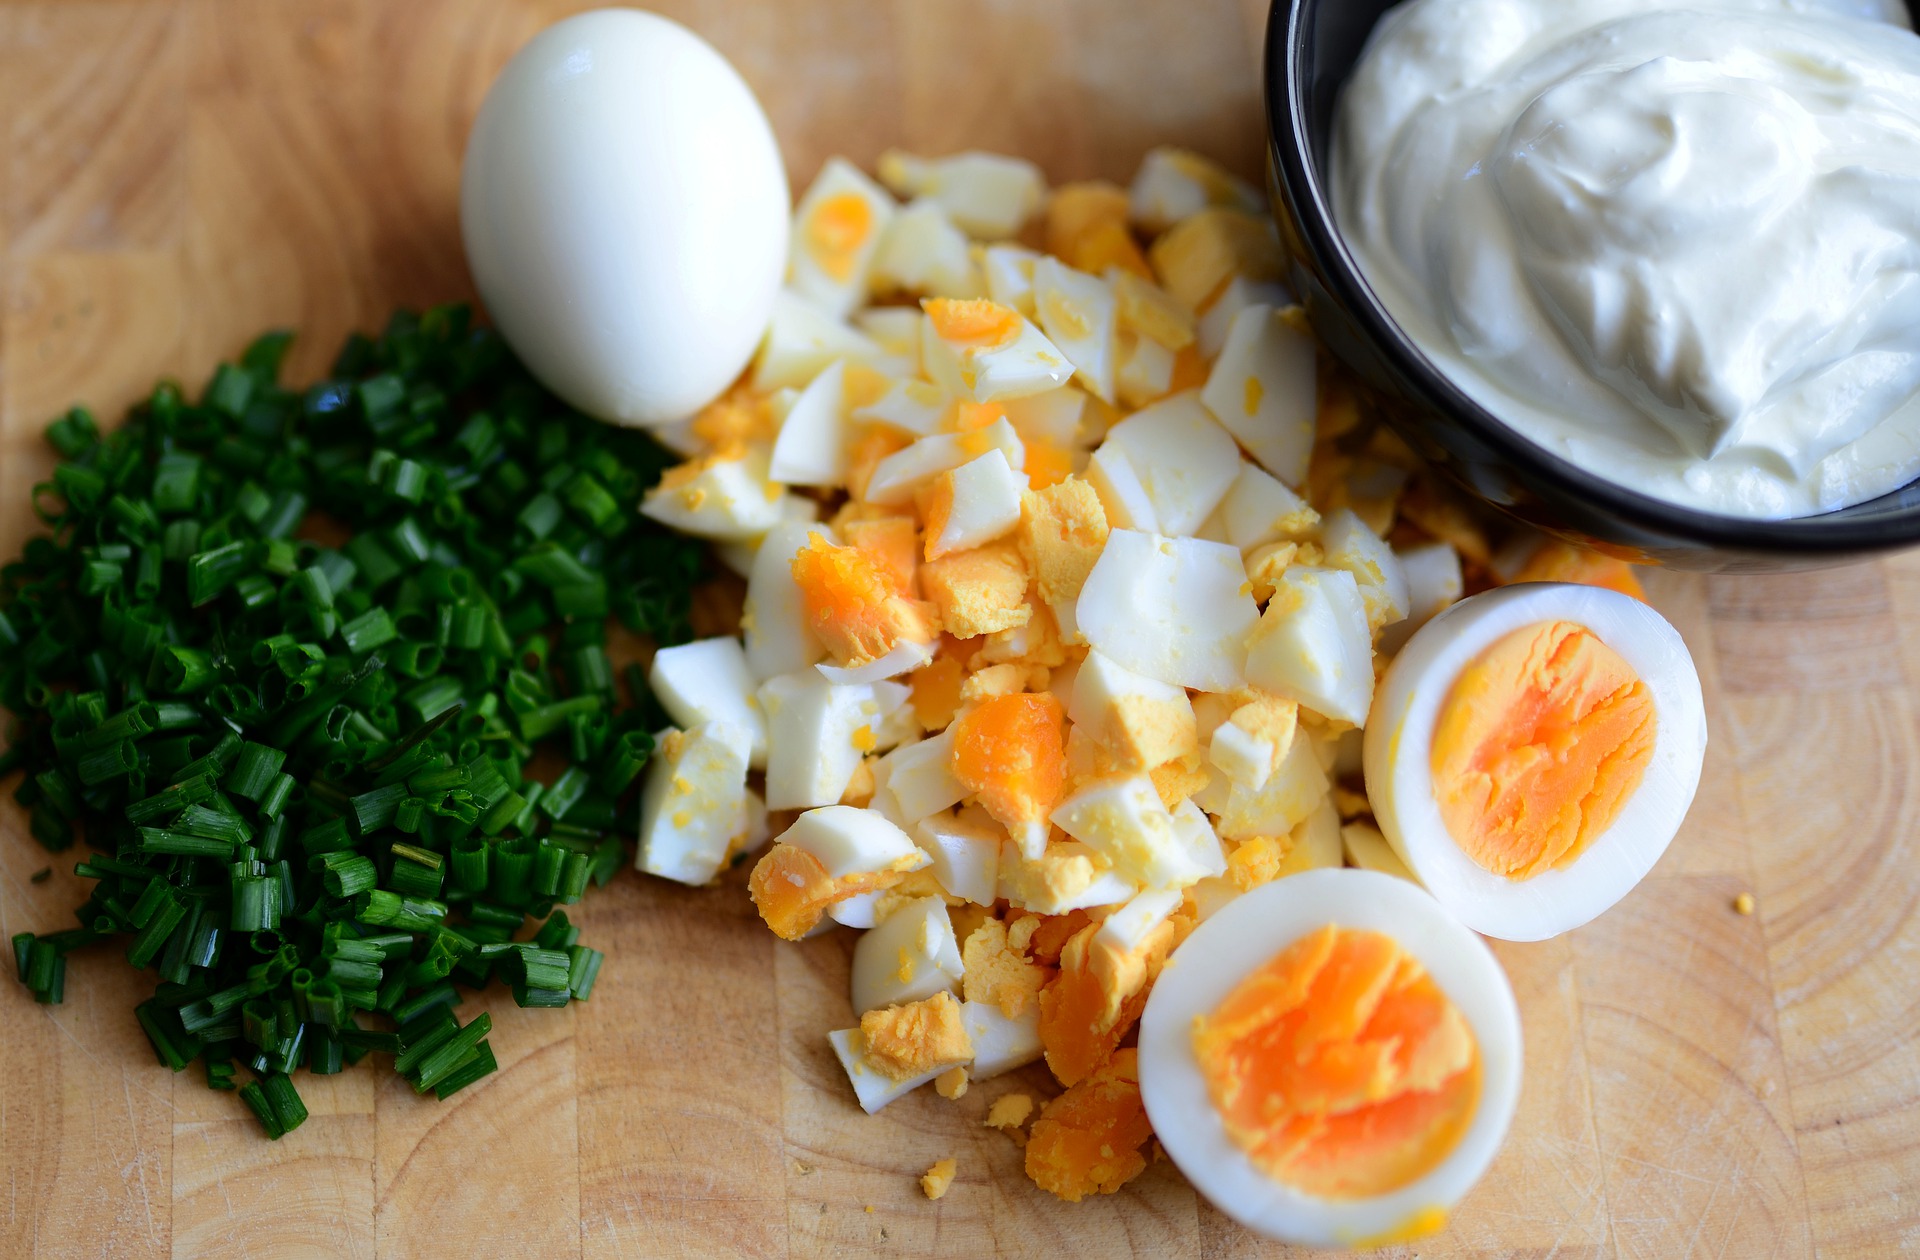 75% Latvijas iedzīvotāju Lieldienu olas ēd arī pēc svētkiem. Receptes pārpalikušo olu notiesāšanai